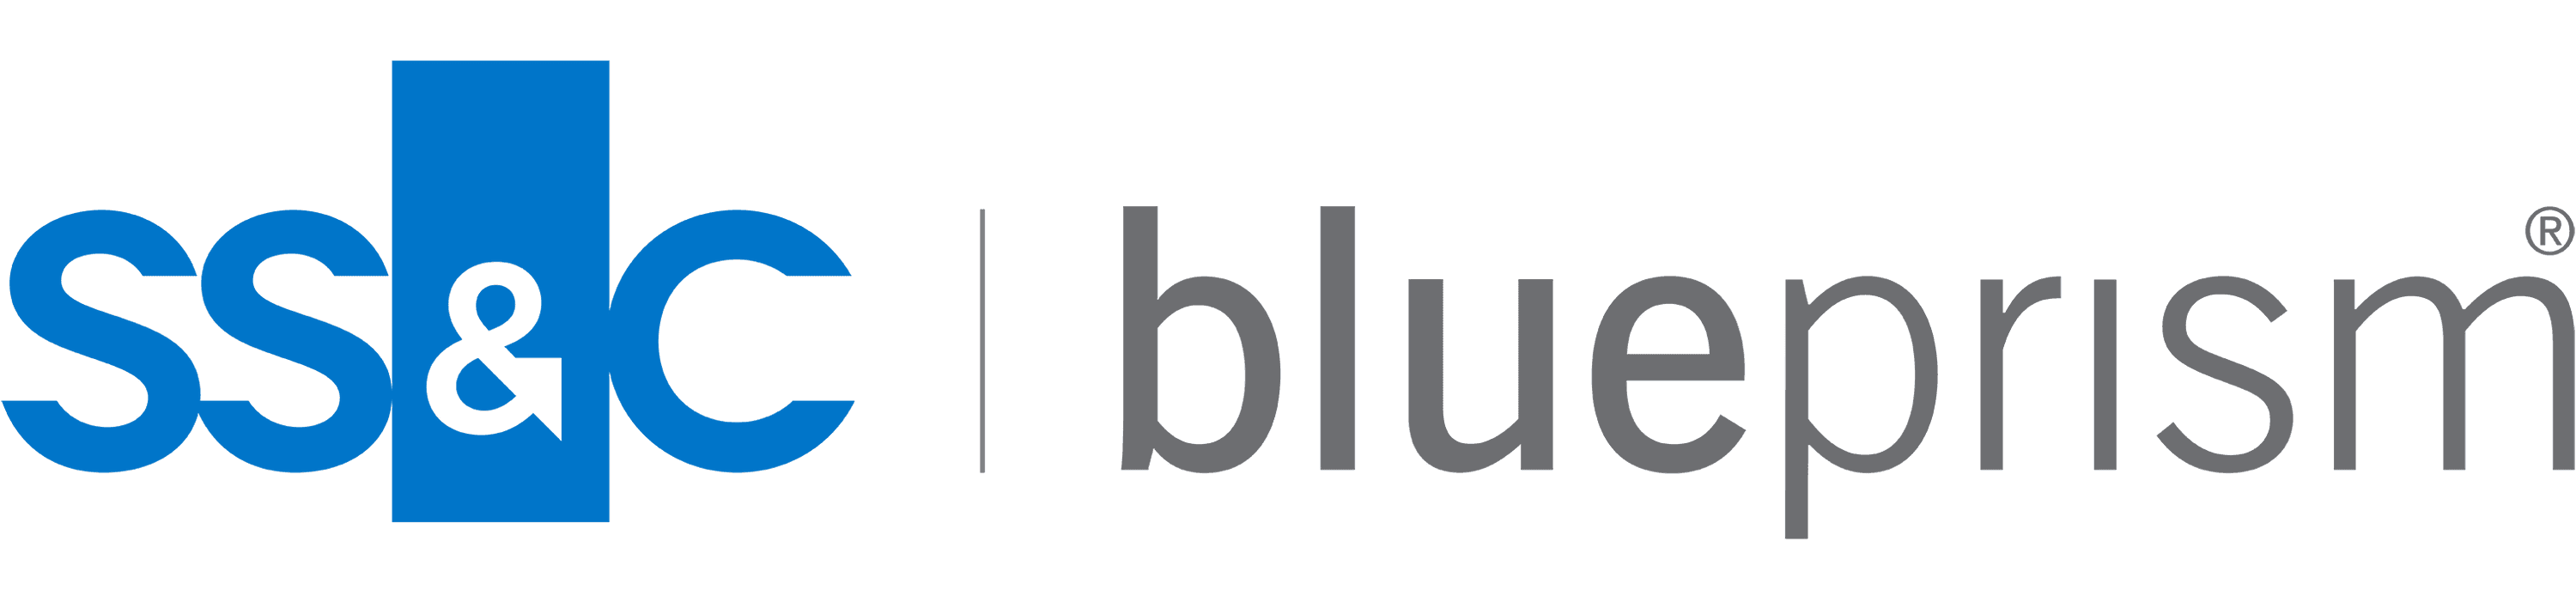 Blue blue prism logo